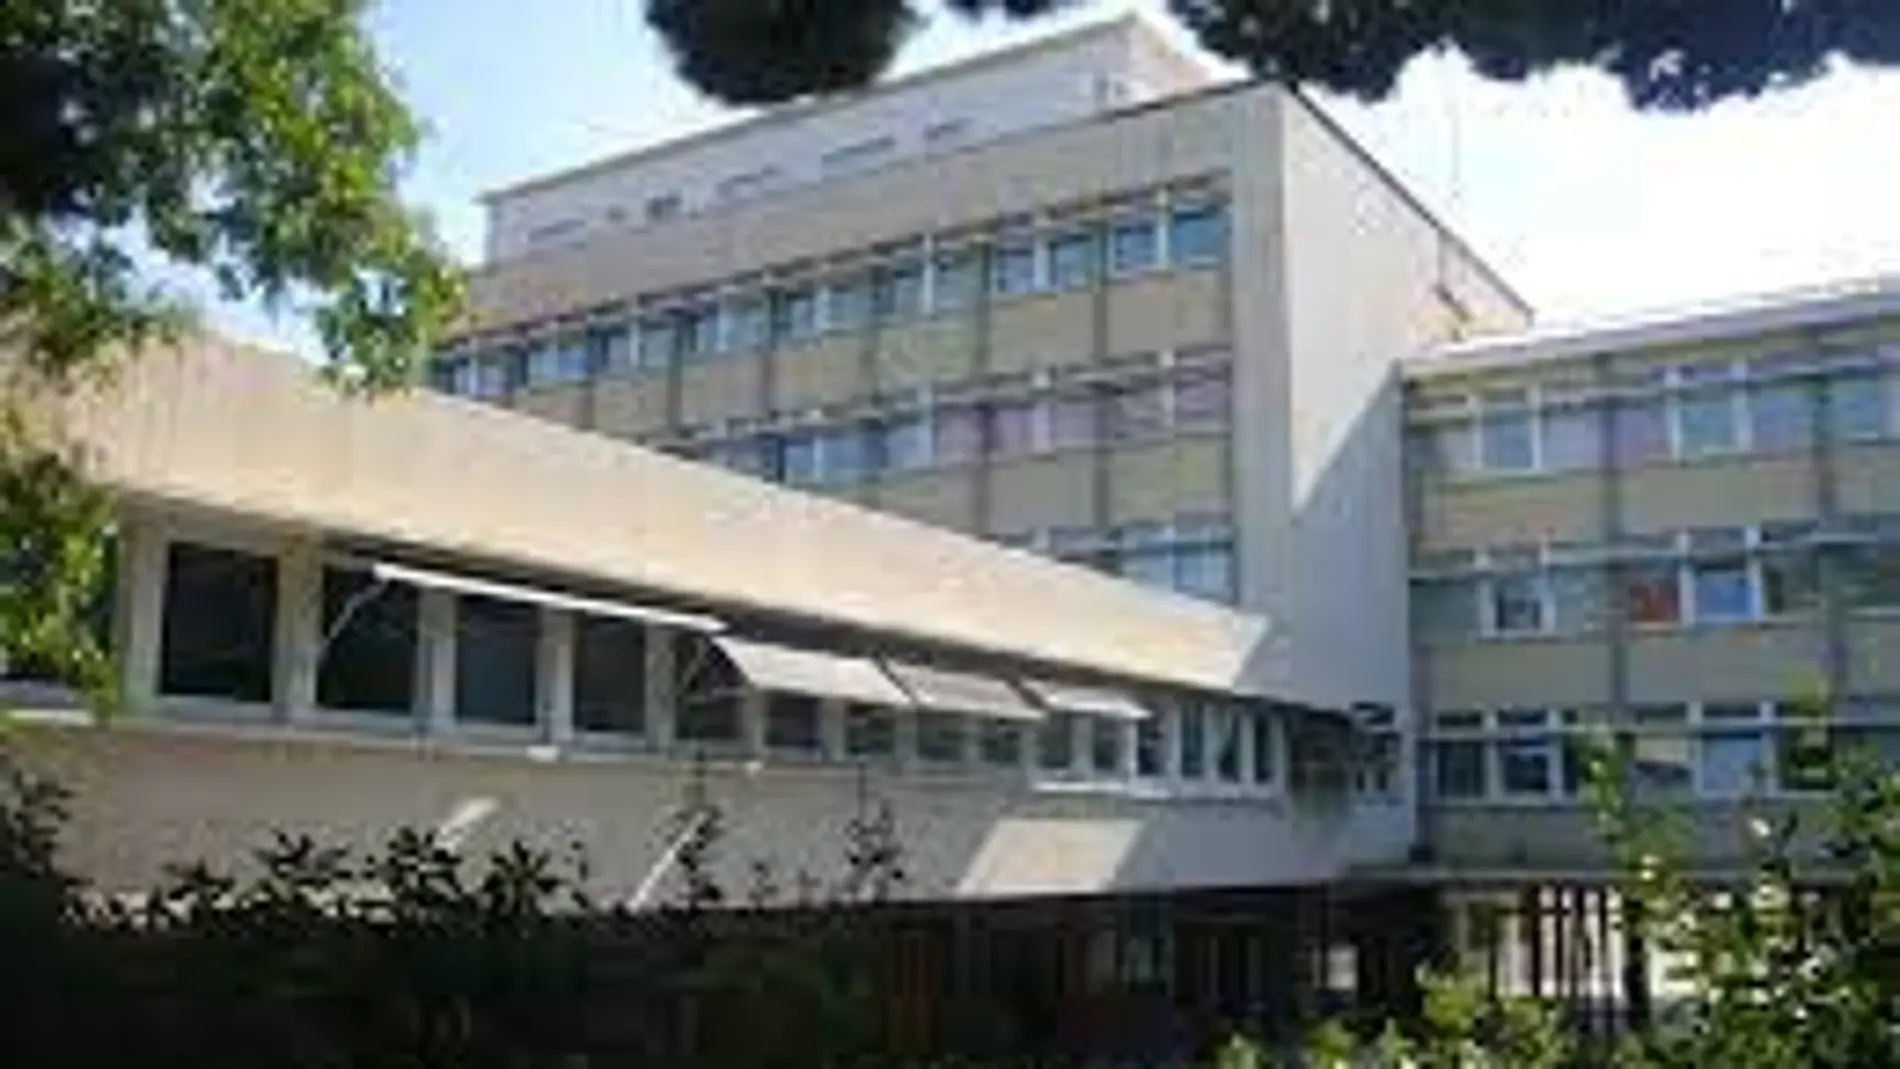 El Liceo Francés de Barcelona 